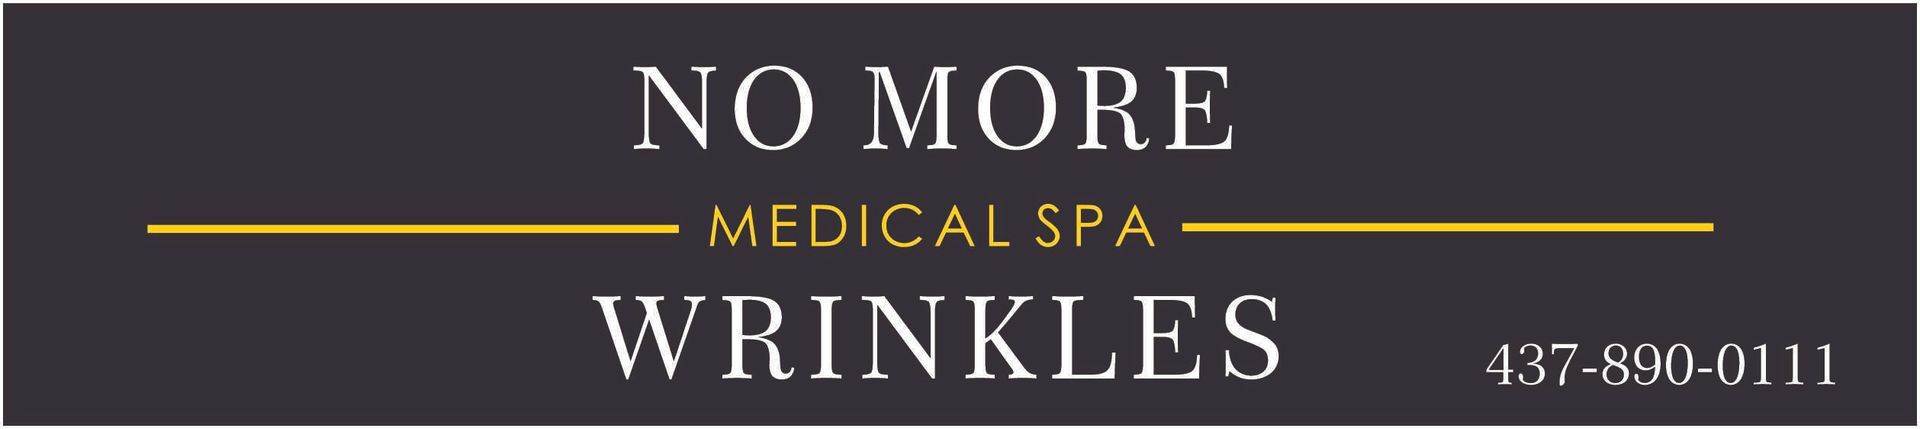 No More Wrinkles Medical Spa Business Logo